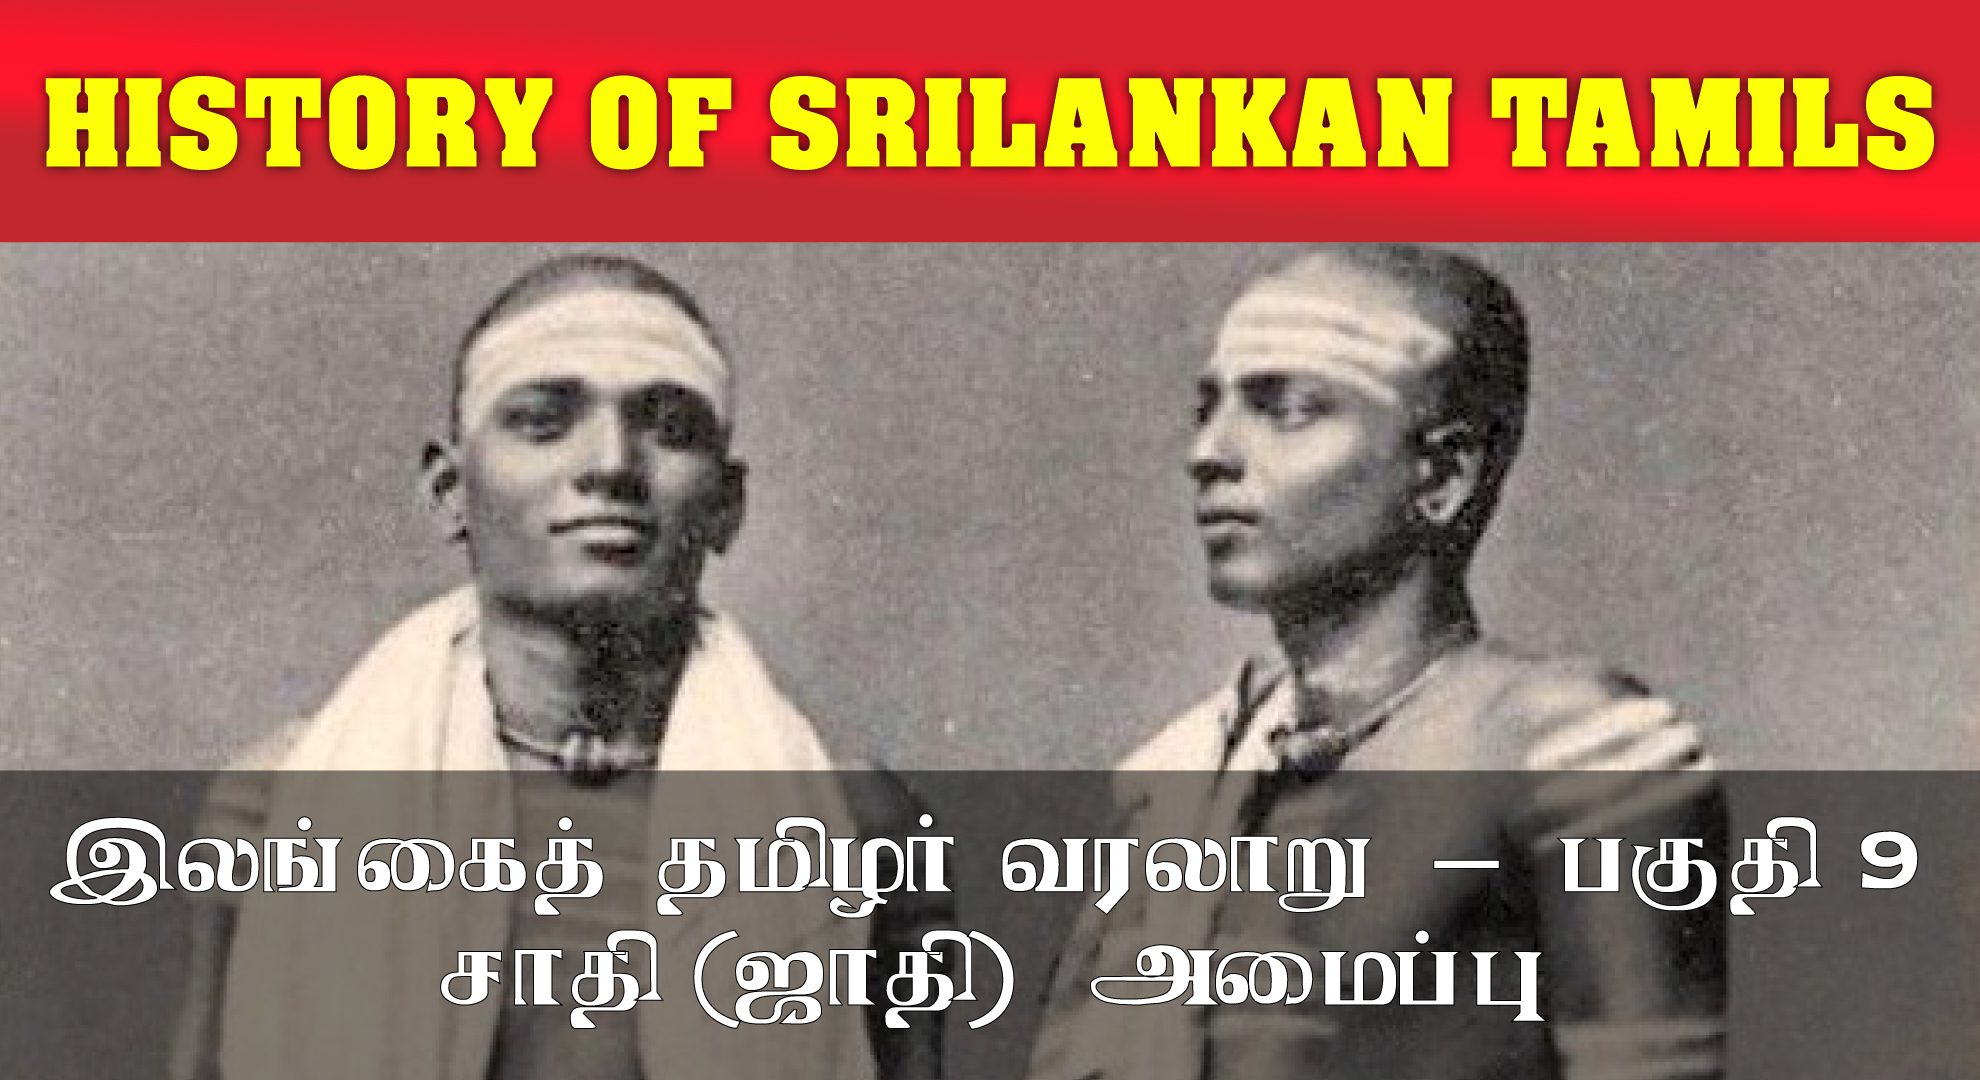 Caste system in Sri Lankan Tamil - Part 9